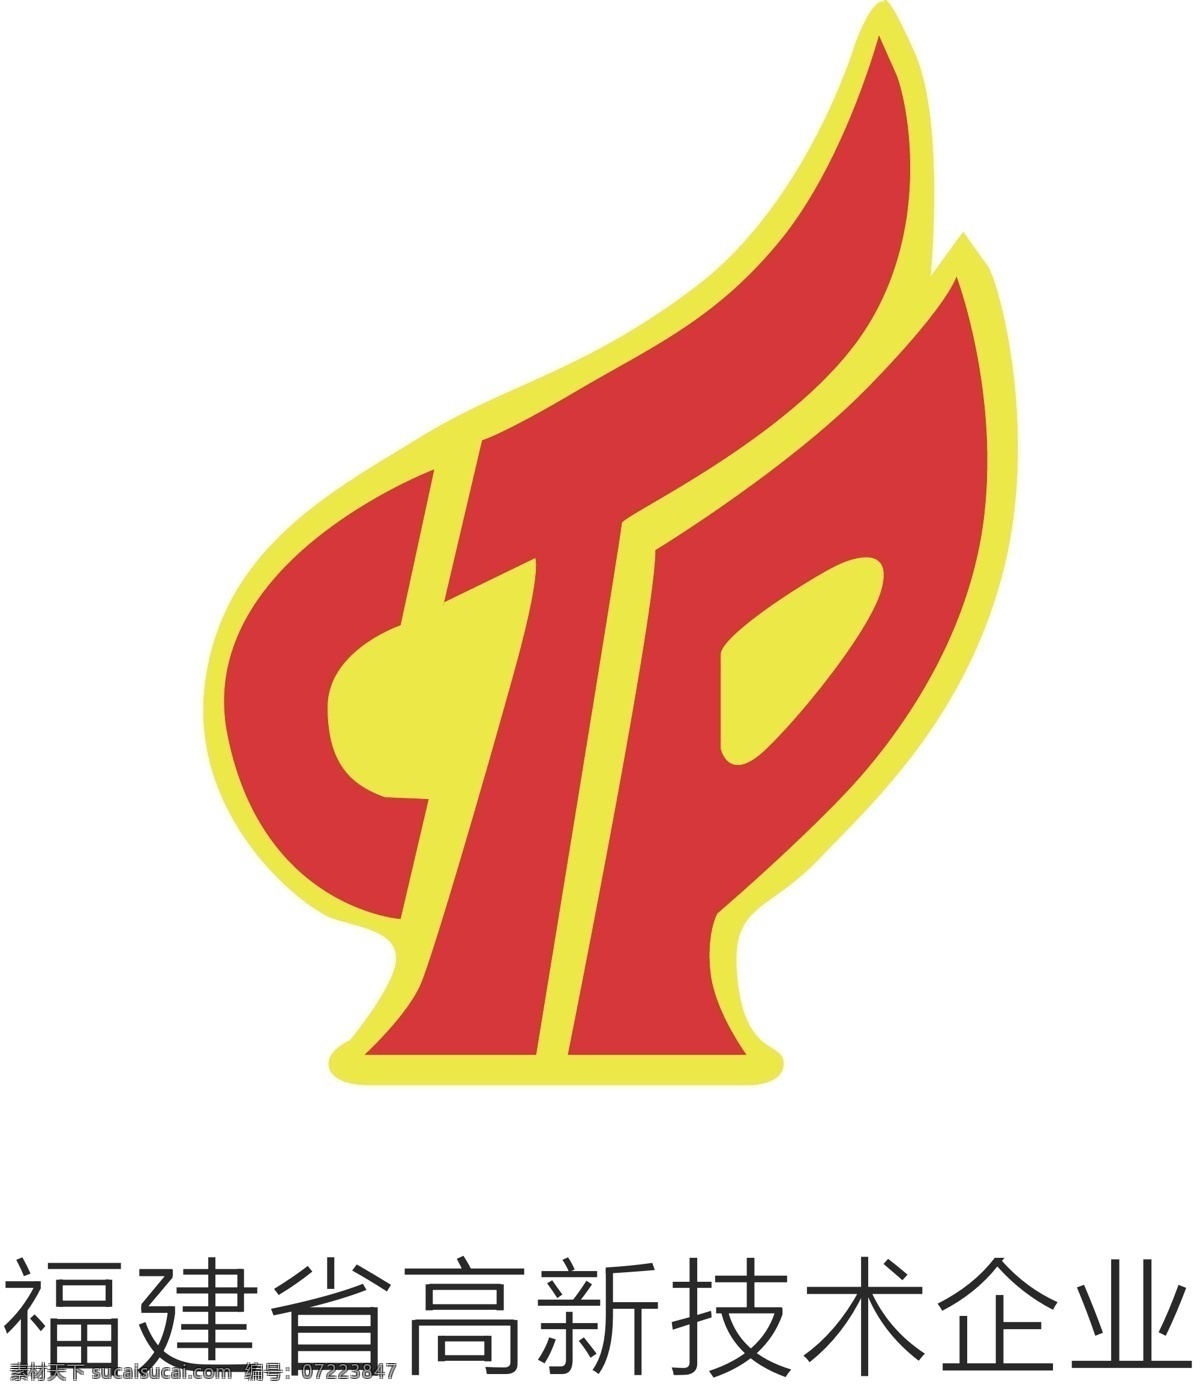 福建省 高新技术 企业 标志 logo 技术 公共标识标志 标识标志图标 矢量